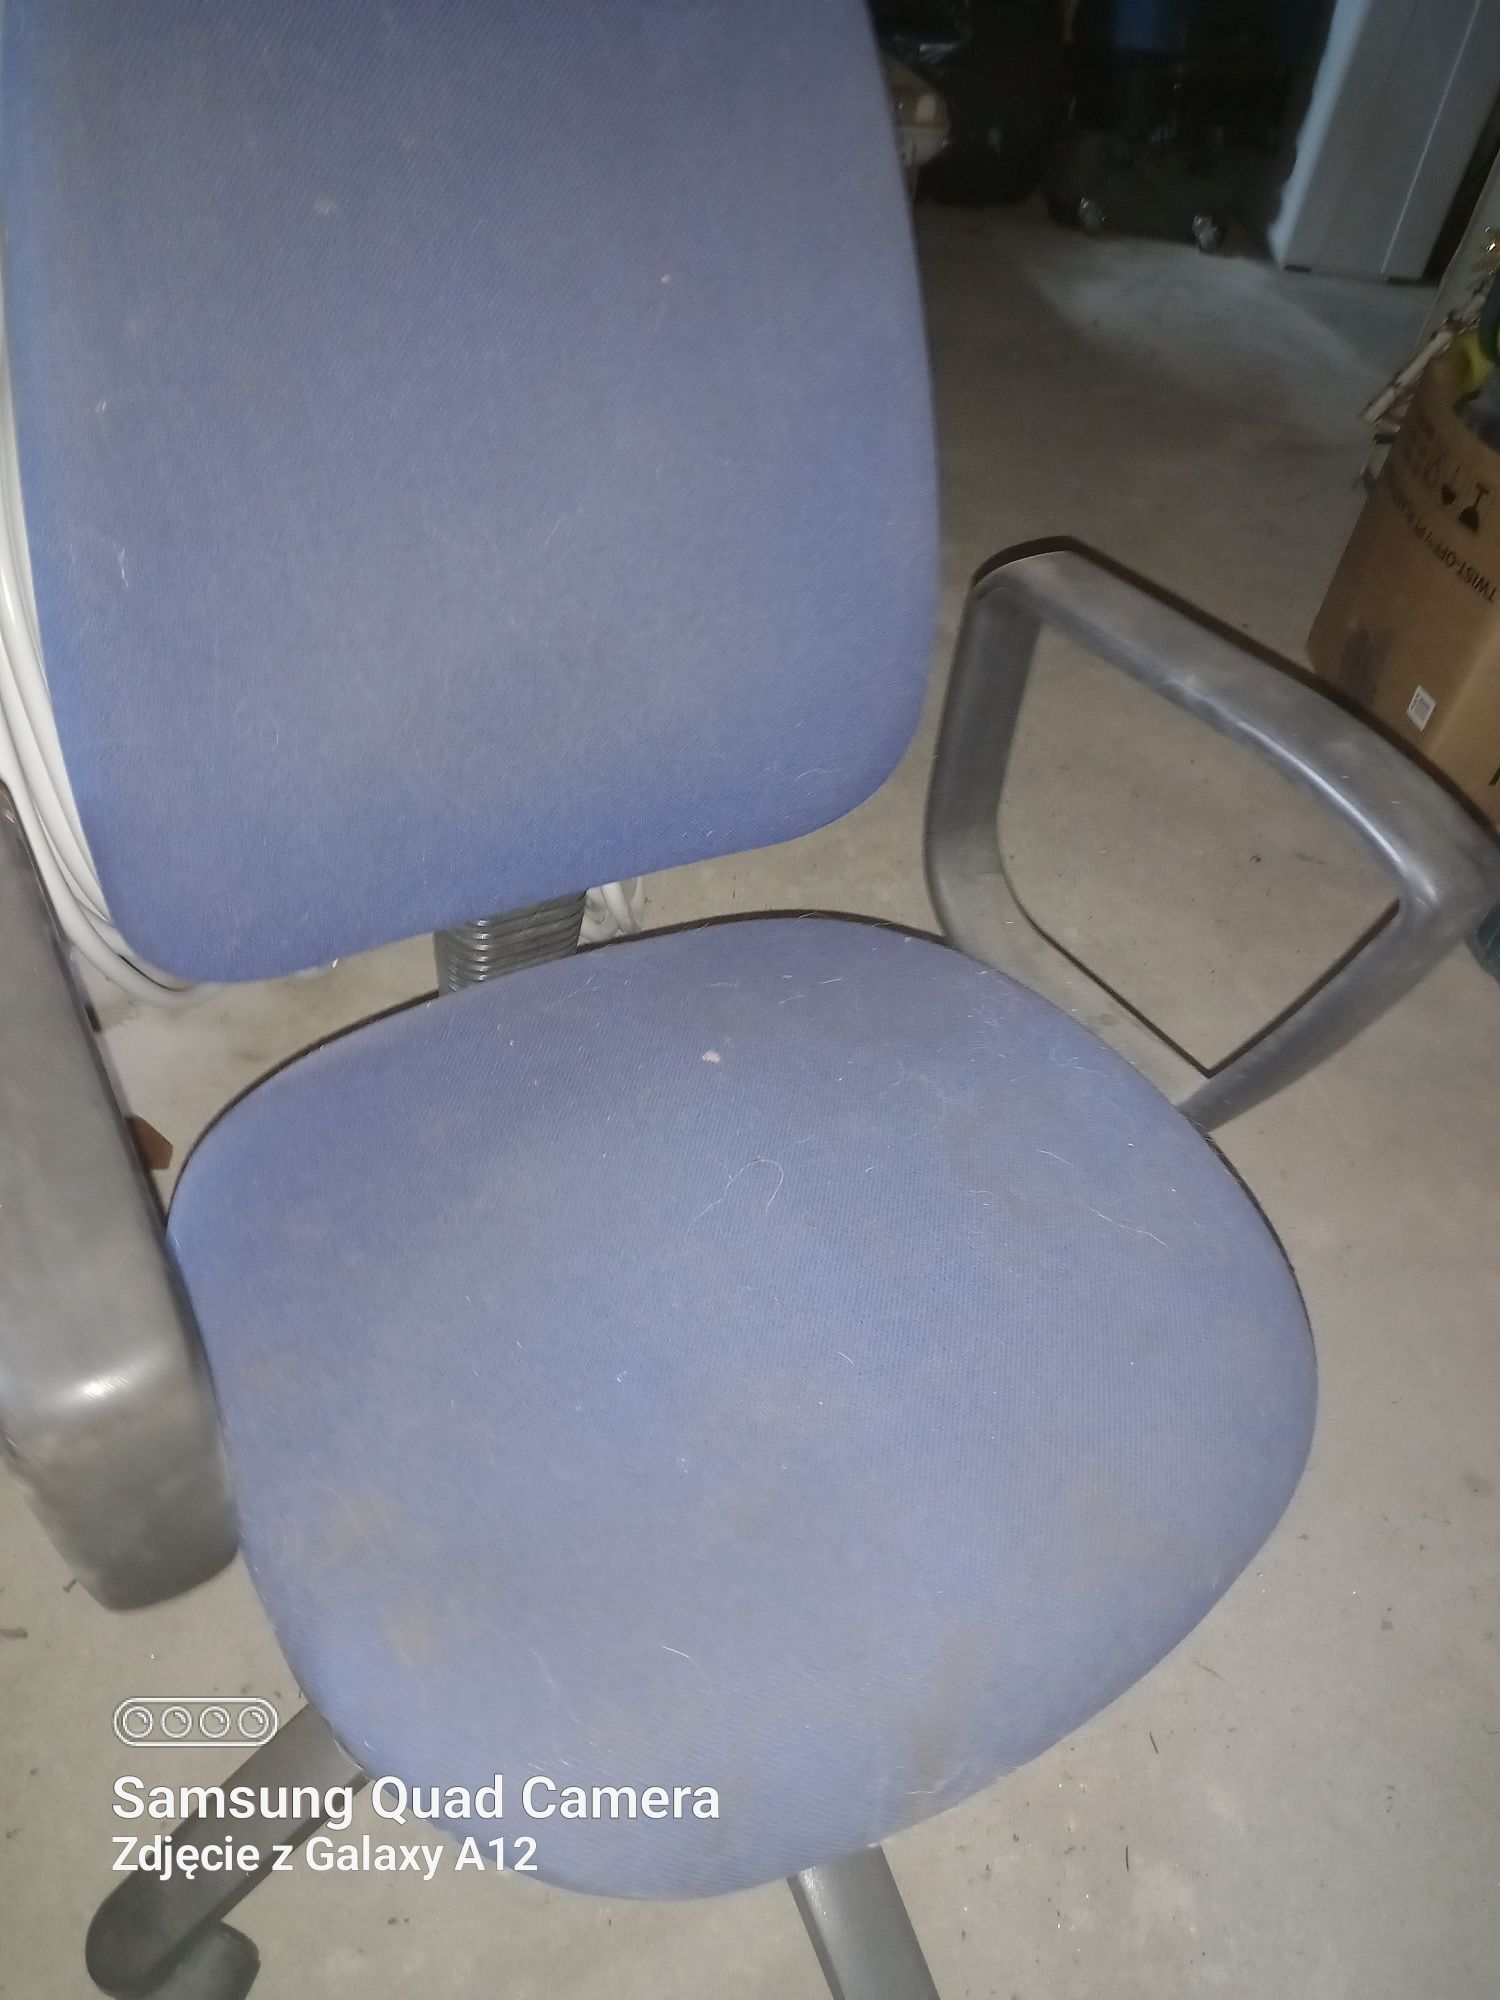 Fotel krzesło obrotowe